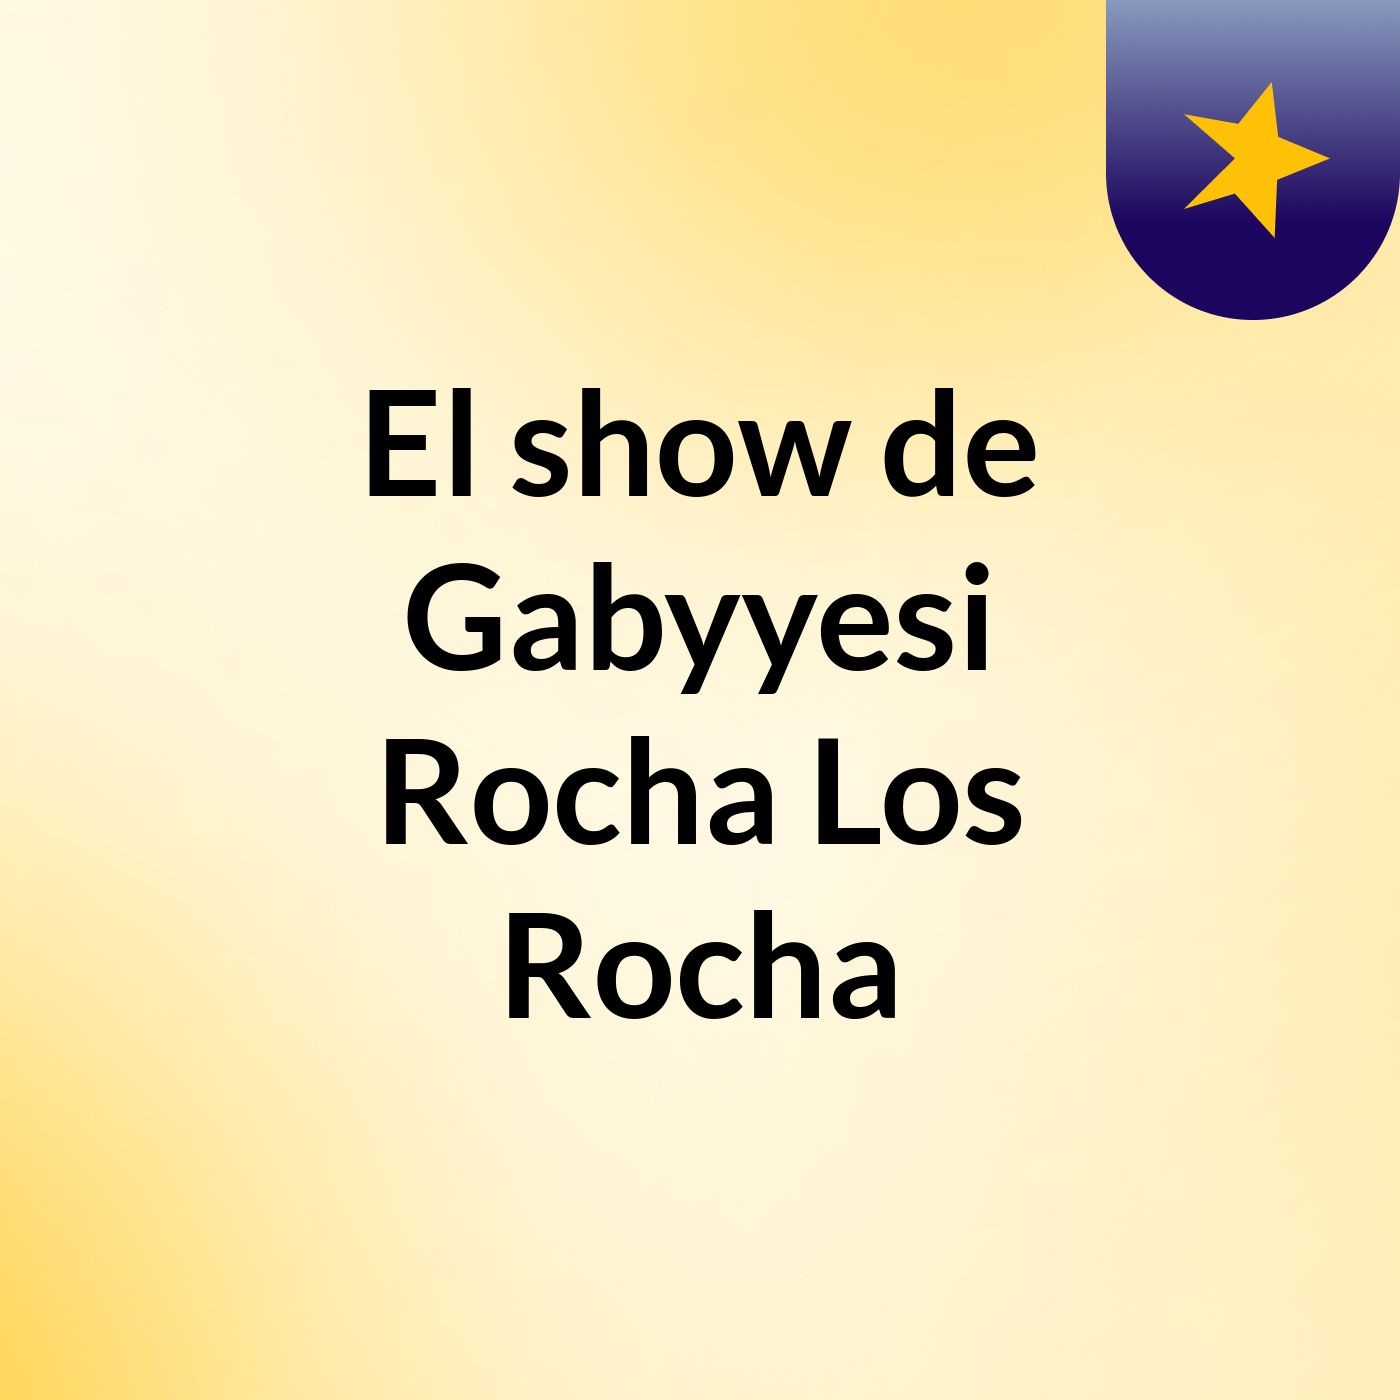 El show de Gabyyesi Rocha Los Rocha